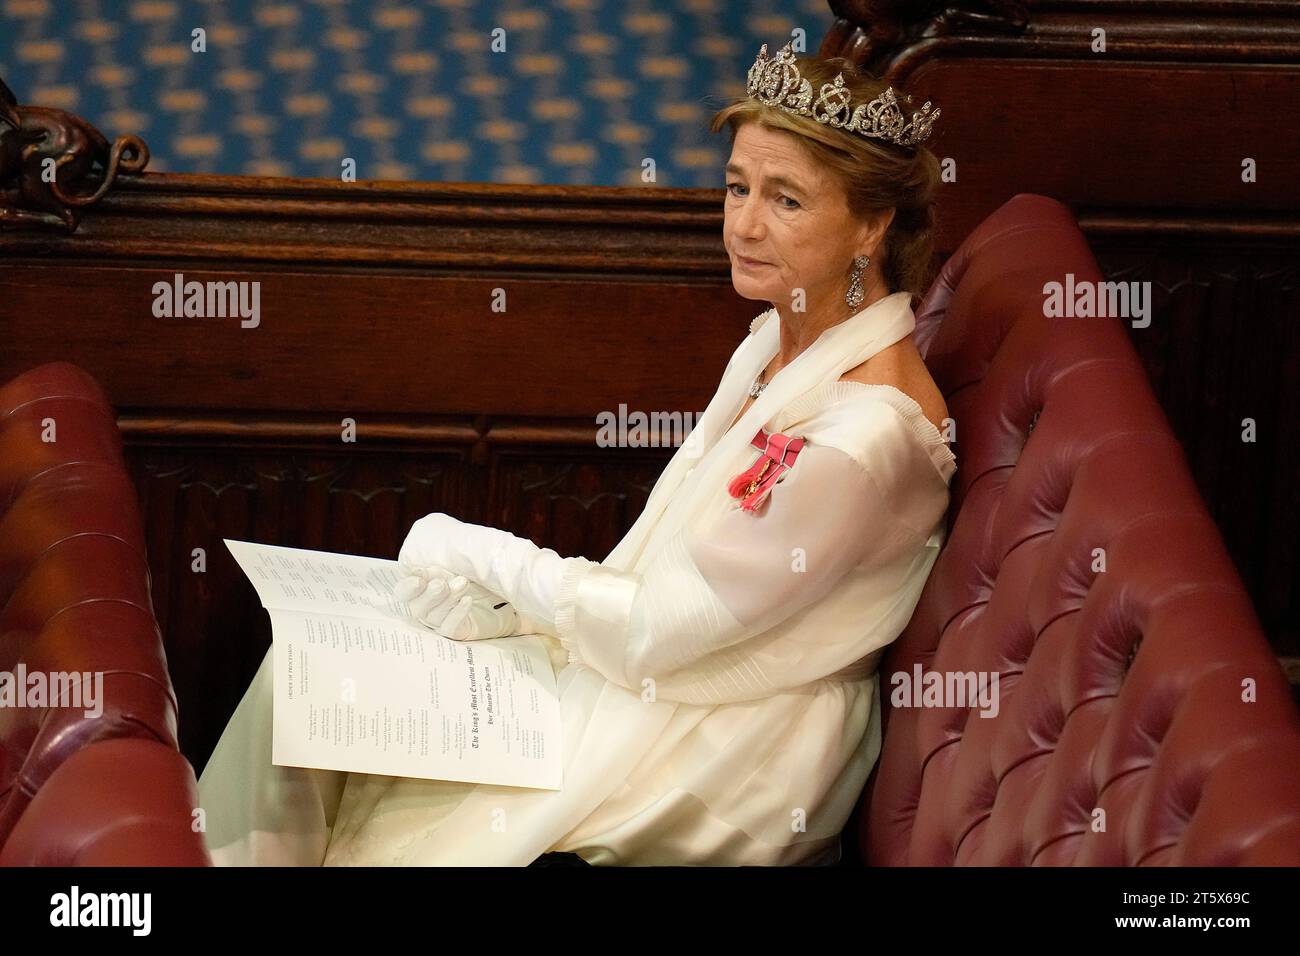 La principessa Antonia, duchessa di Wellington attende l'inizio dell'apertura statale del Parlamento, nella camera dei lord al Palazzo di Westminster a Londra. Data immagine: Martedì 7 novembre 2023. Foto Stock